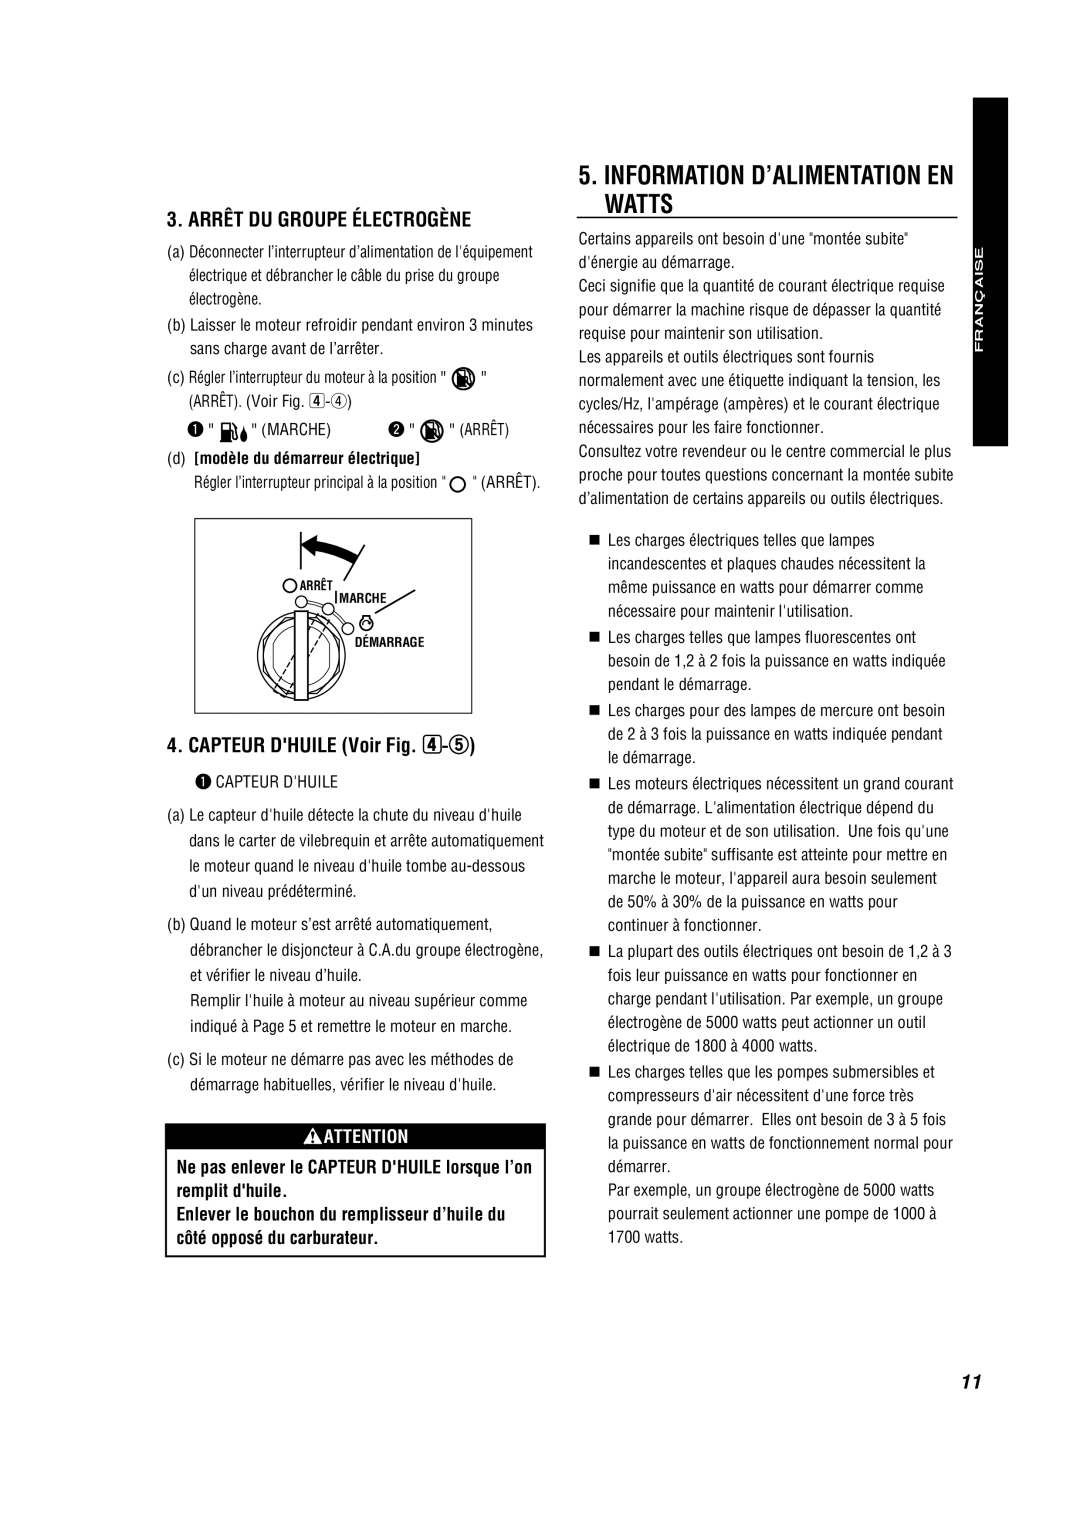 Subaru RG2800IS manual Arrêt Du Groupe Électrogène, CAPTEUR DHUILE Voir -t, Information D’Alimentation En Watts, Française 